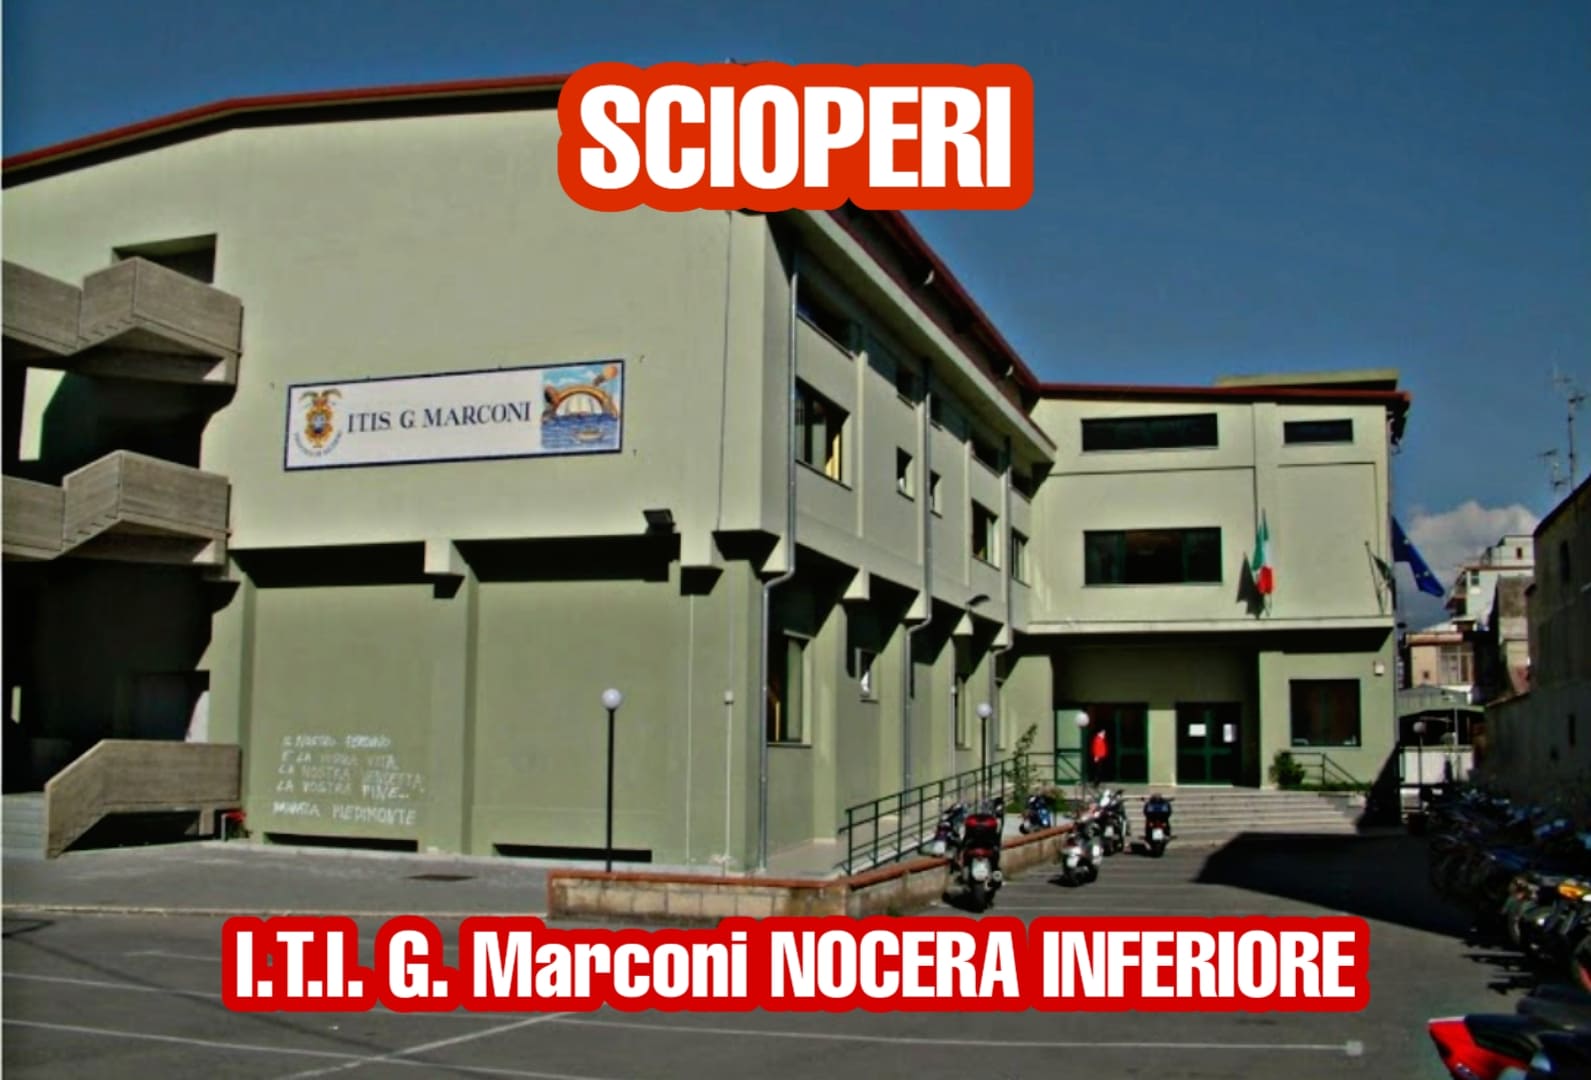 Continui scioperi all' I.T.I. Guglielmo Marconi di Nocera inferiore SICUREZZA STRUTTURALE